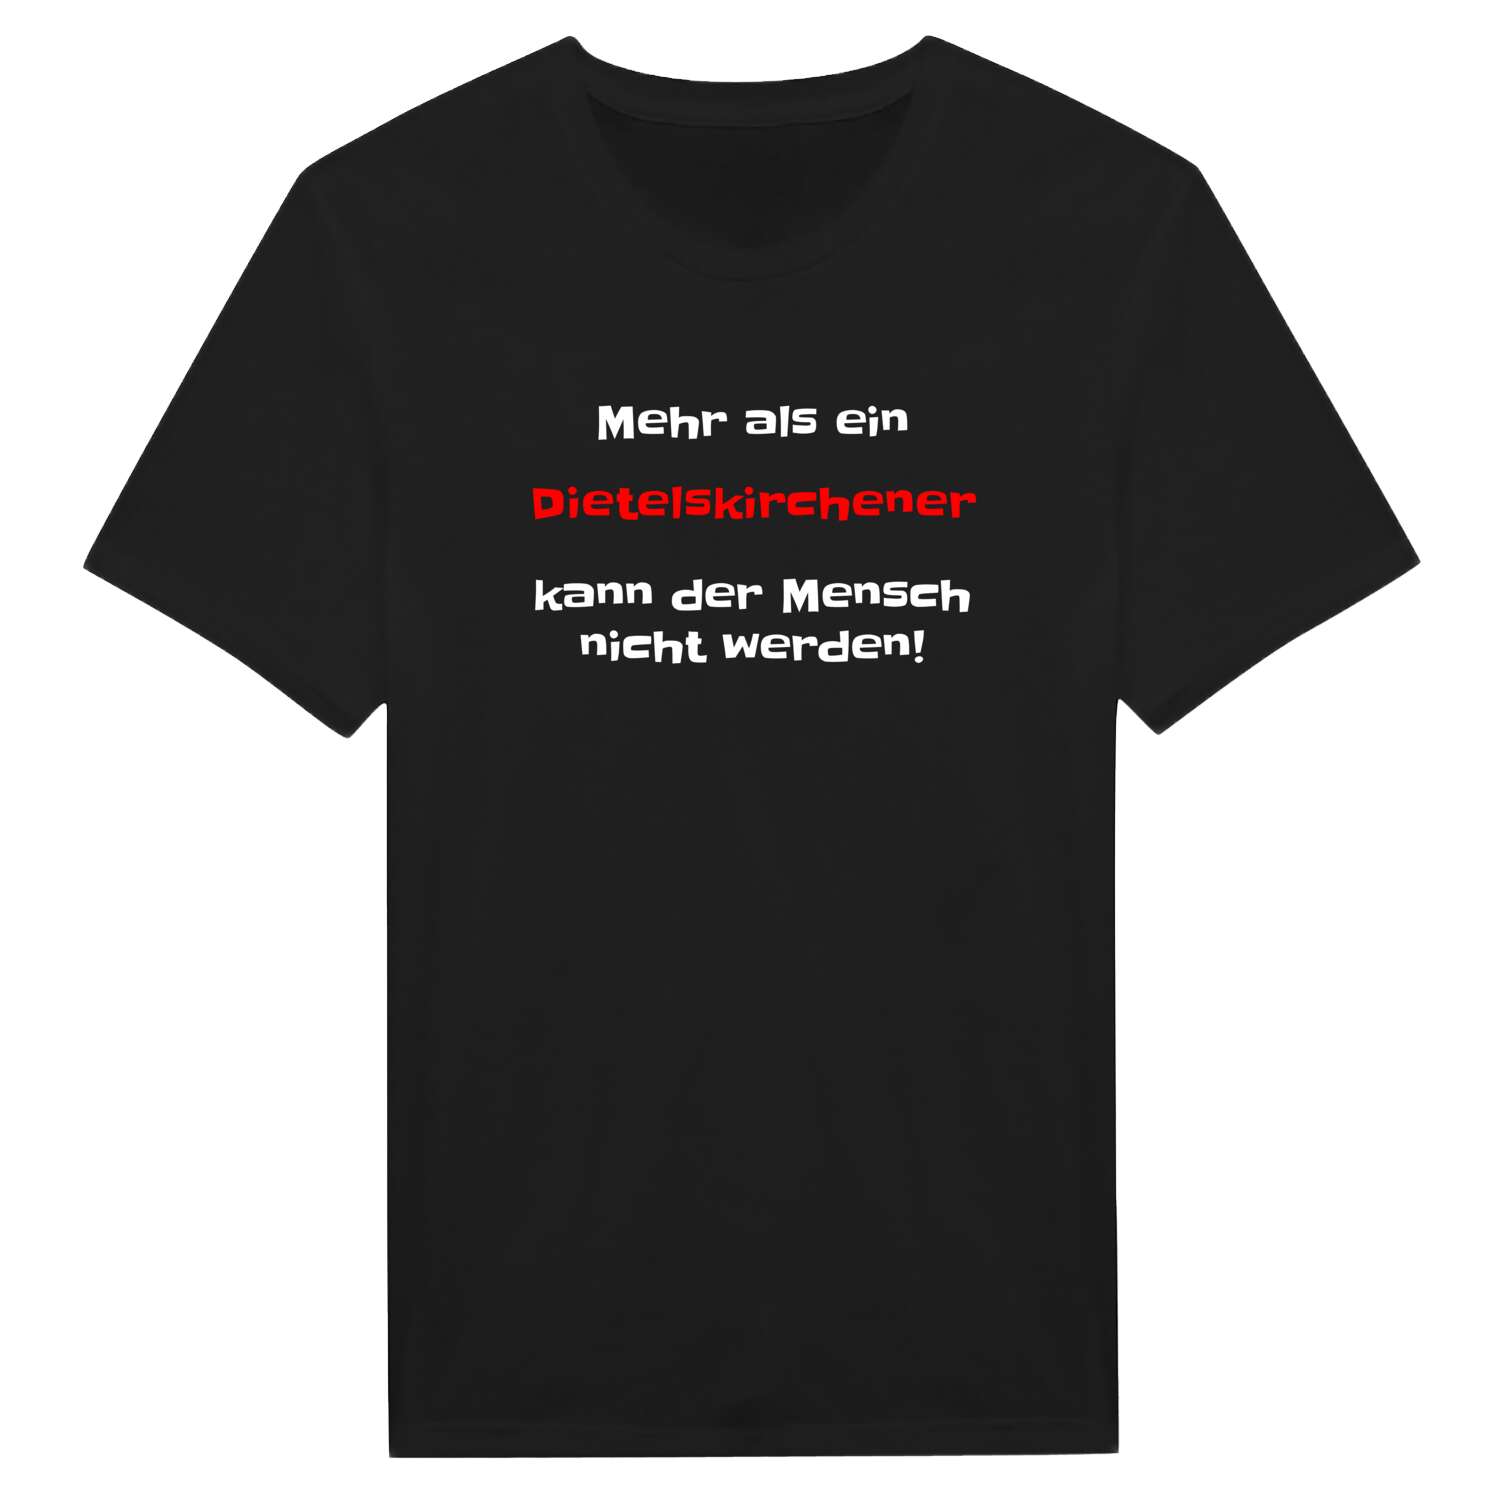 Dietelskirchen T-Shirt »Mehr als ein«